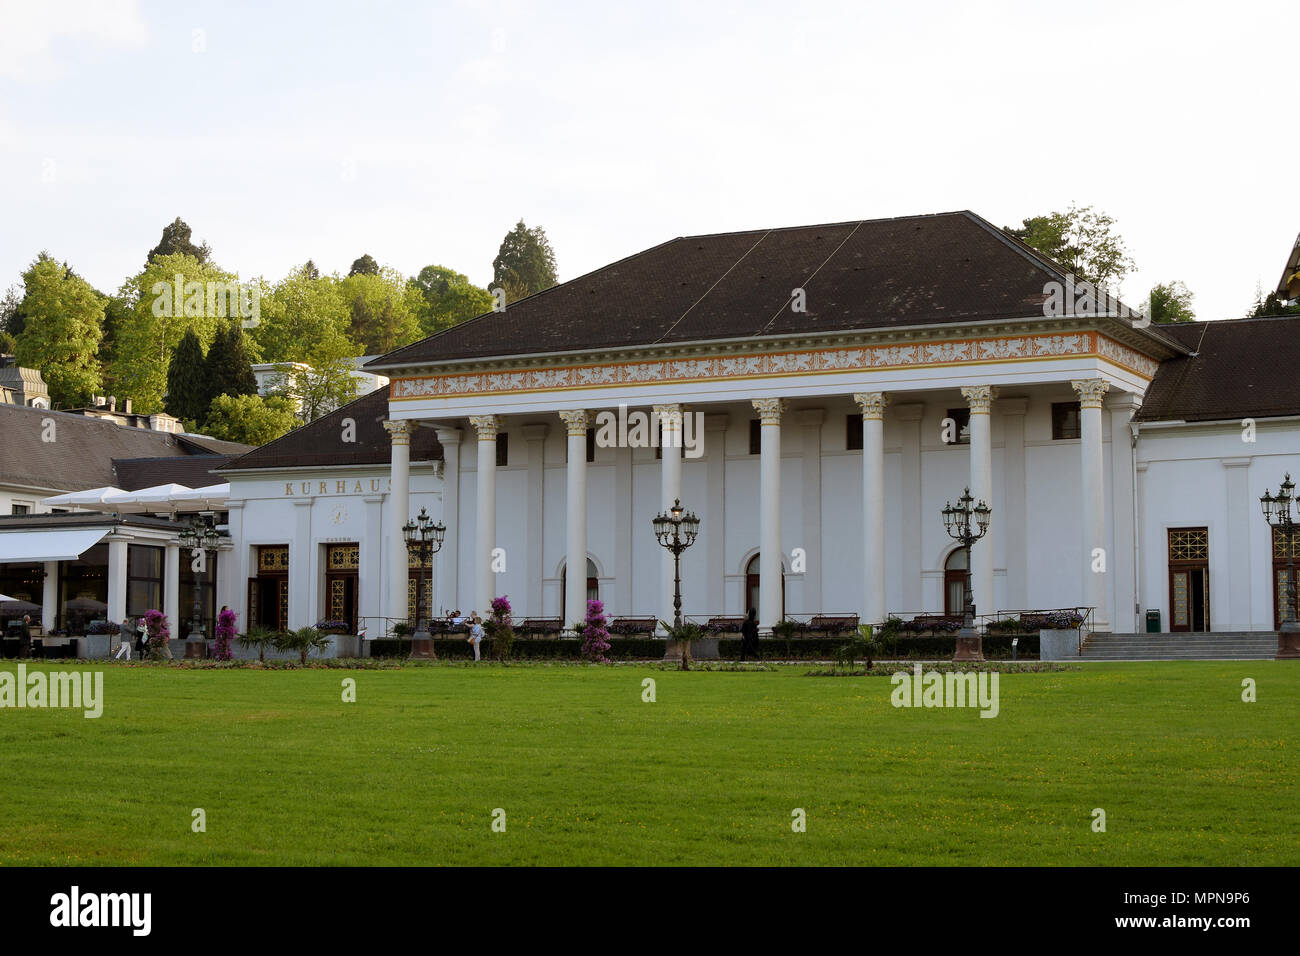 BADEN-BADEN, Deutschland - 18. Mai 2018: Kurhaus Baden-Baden ist ein Spa Resort, Casino, und Konferenz Komplex Stockfoto